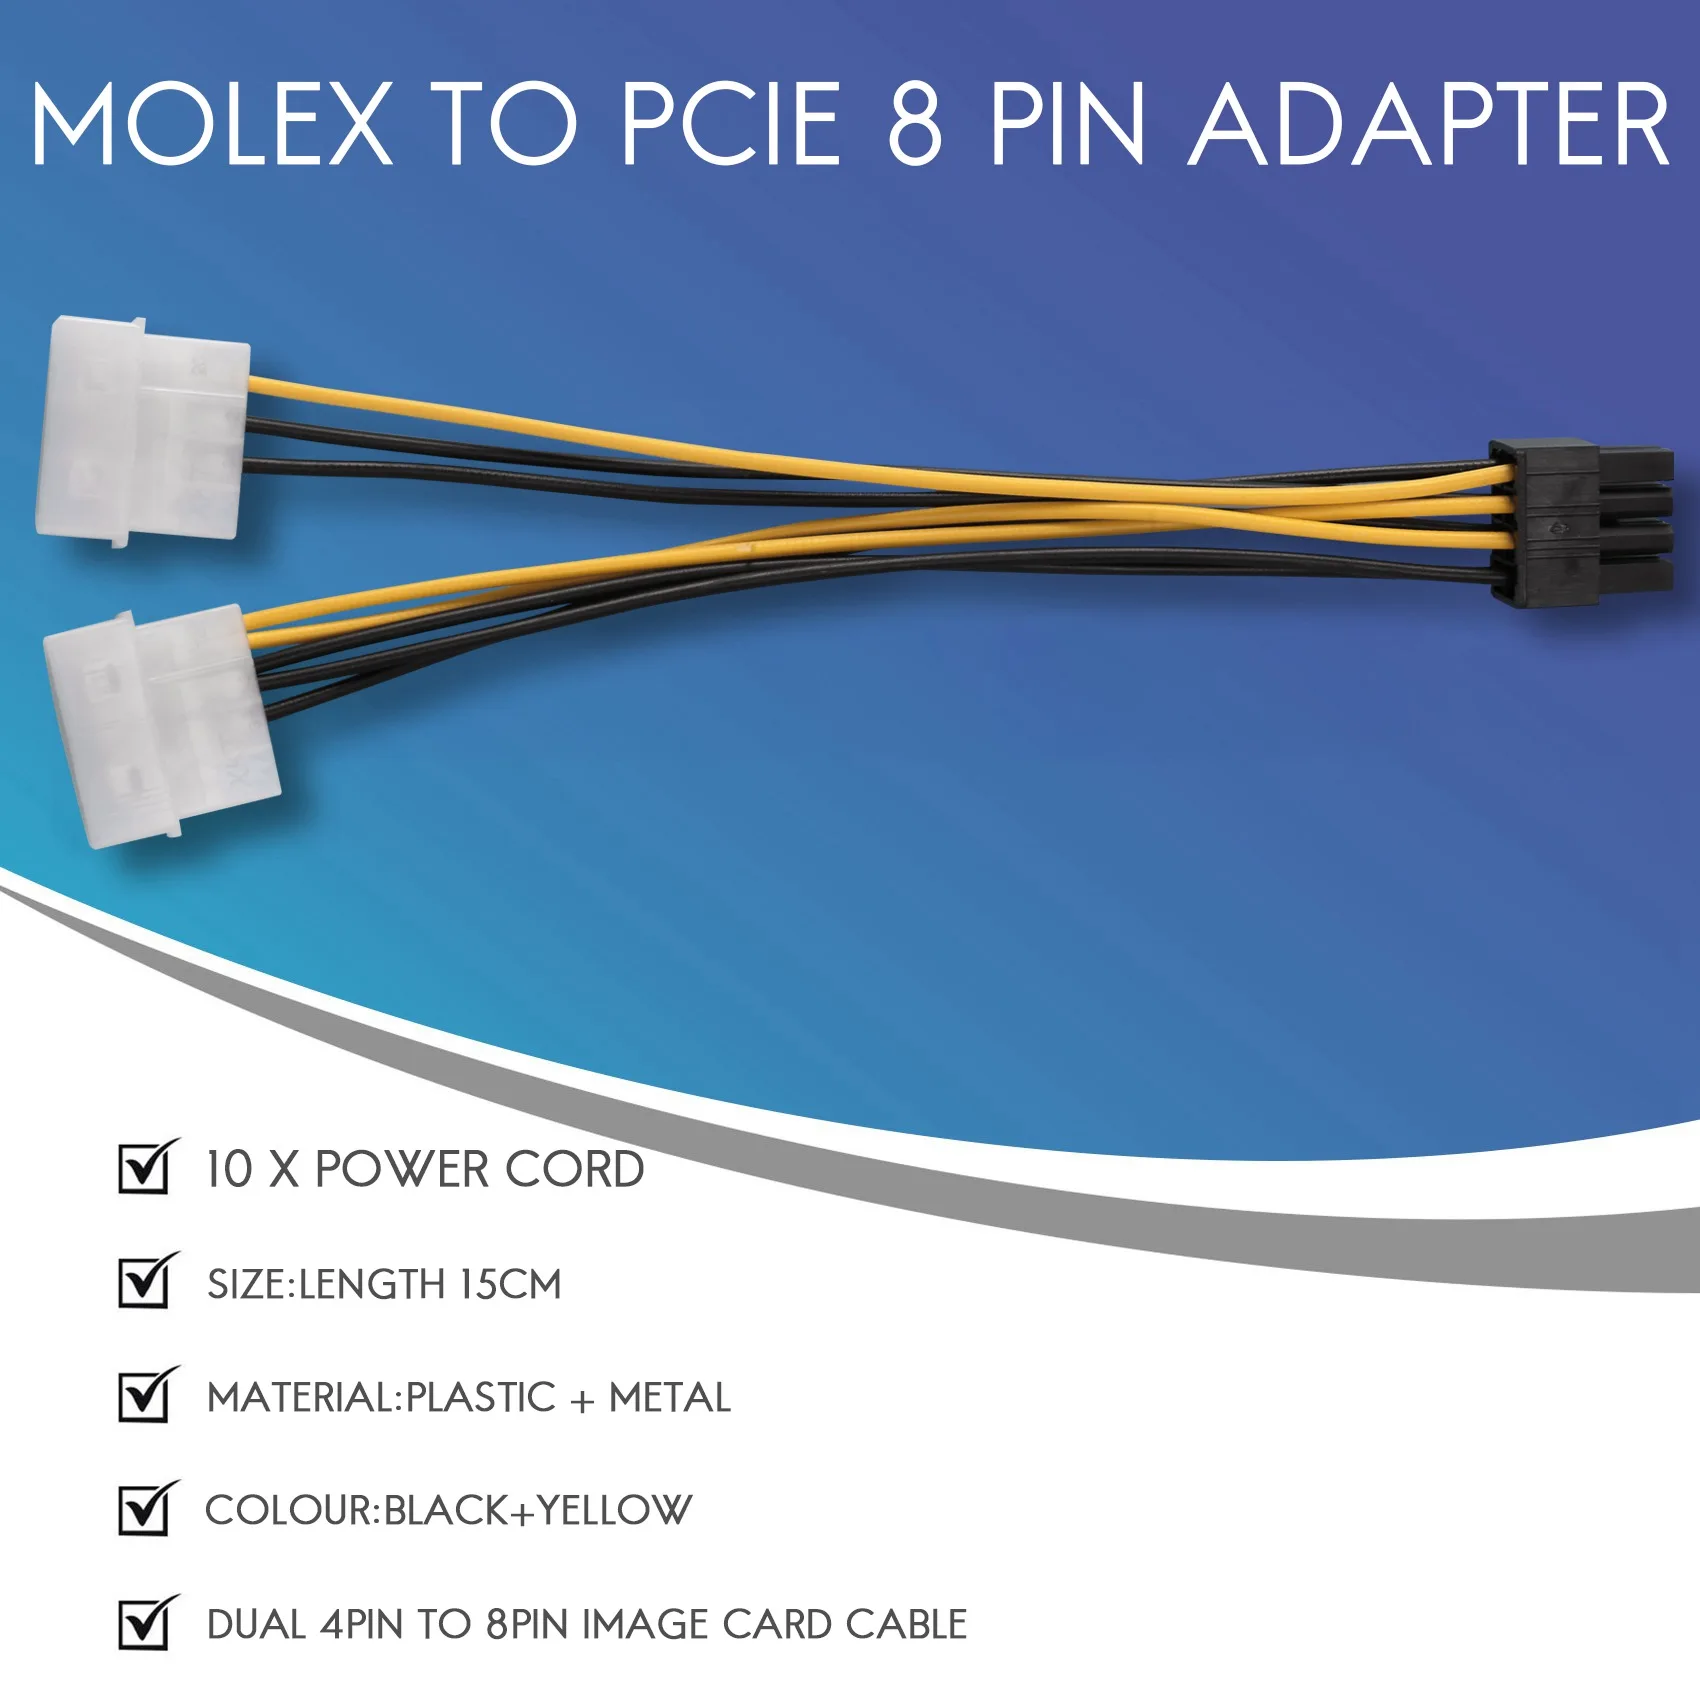 10ШТ 2 Molex 4-Контактный к 8-Контактной Видеокарте PCI Express Кабель Преобразователя Питания Блока питания Pci-E ATX-Кабель Адаптера Molex к Pcie 8-Контактный